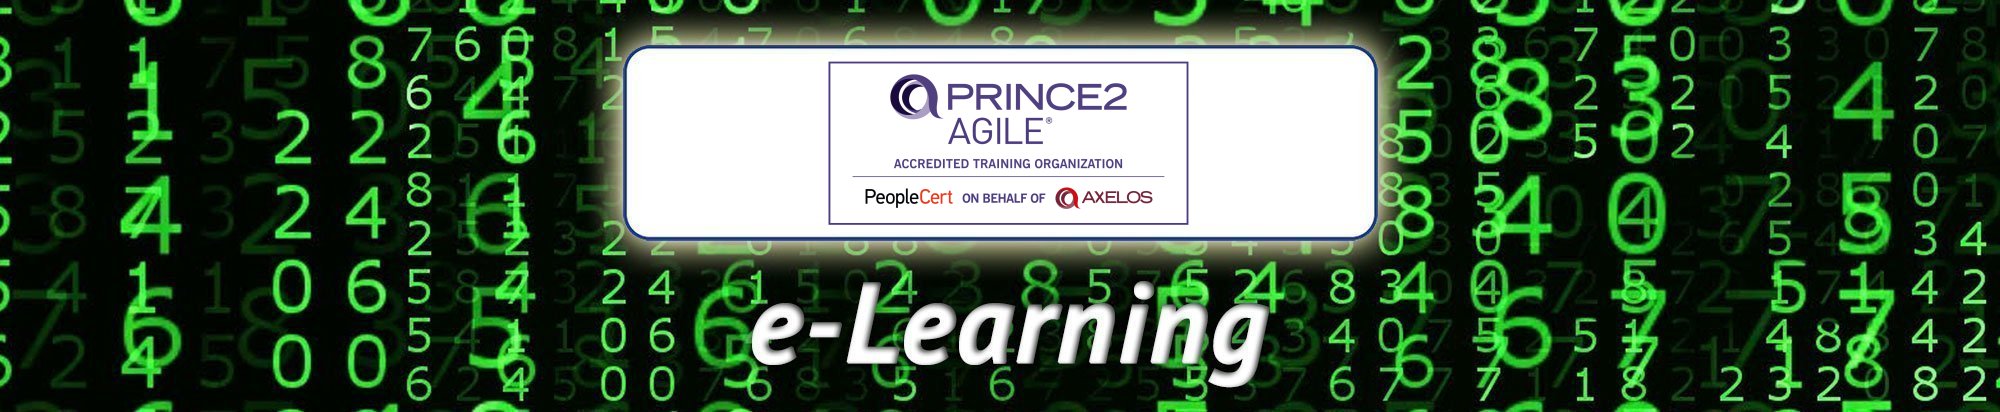 PRINCE2 Agile e-Learning